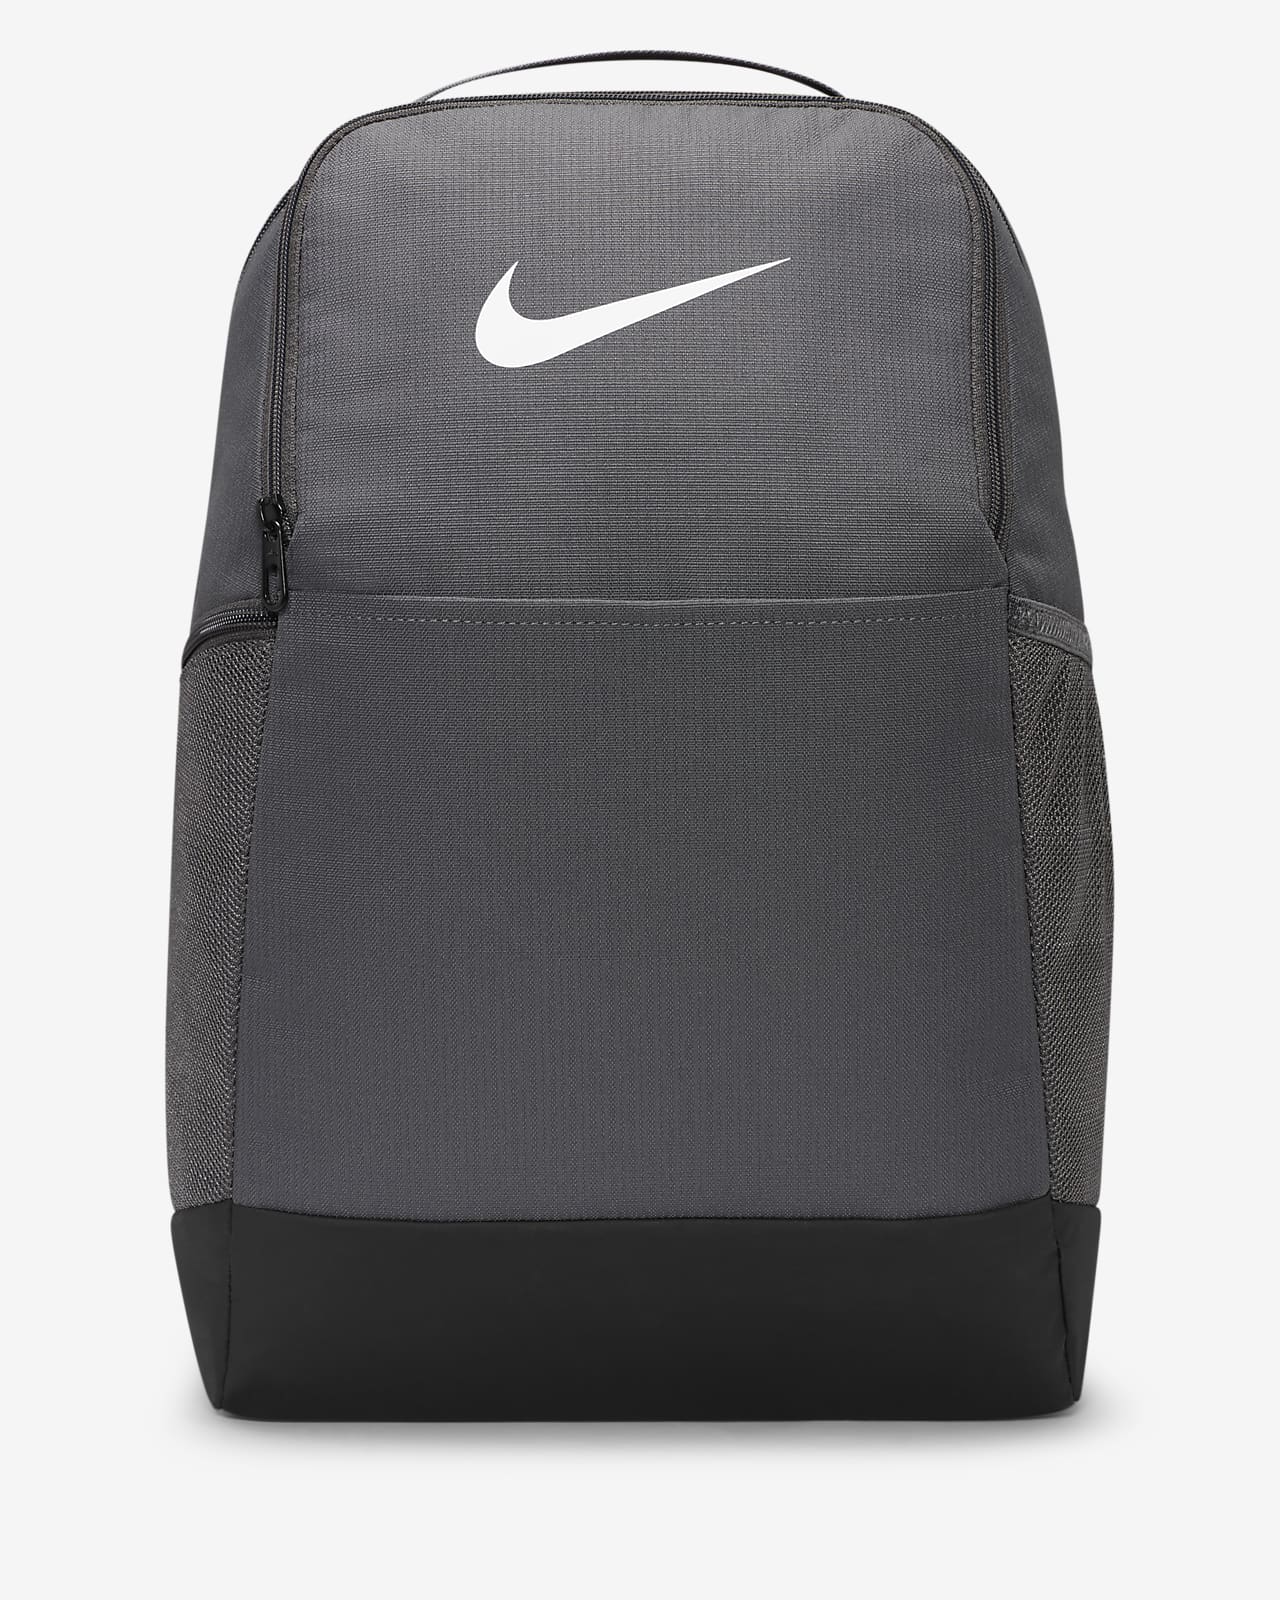 Plecak treningowy Nike Brasilia 9.5 (rozmiar M, 24 l)